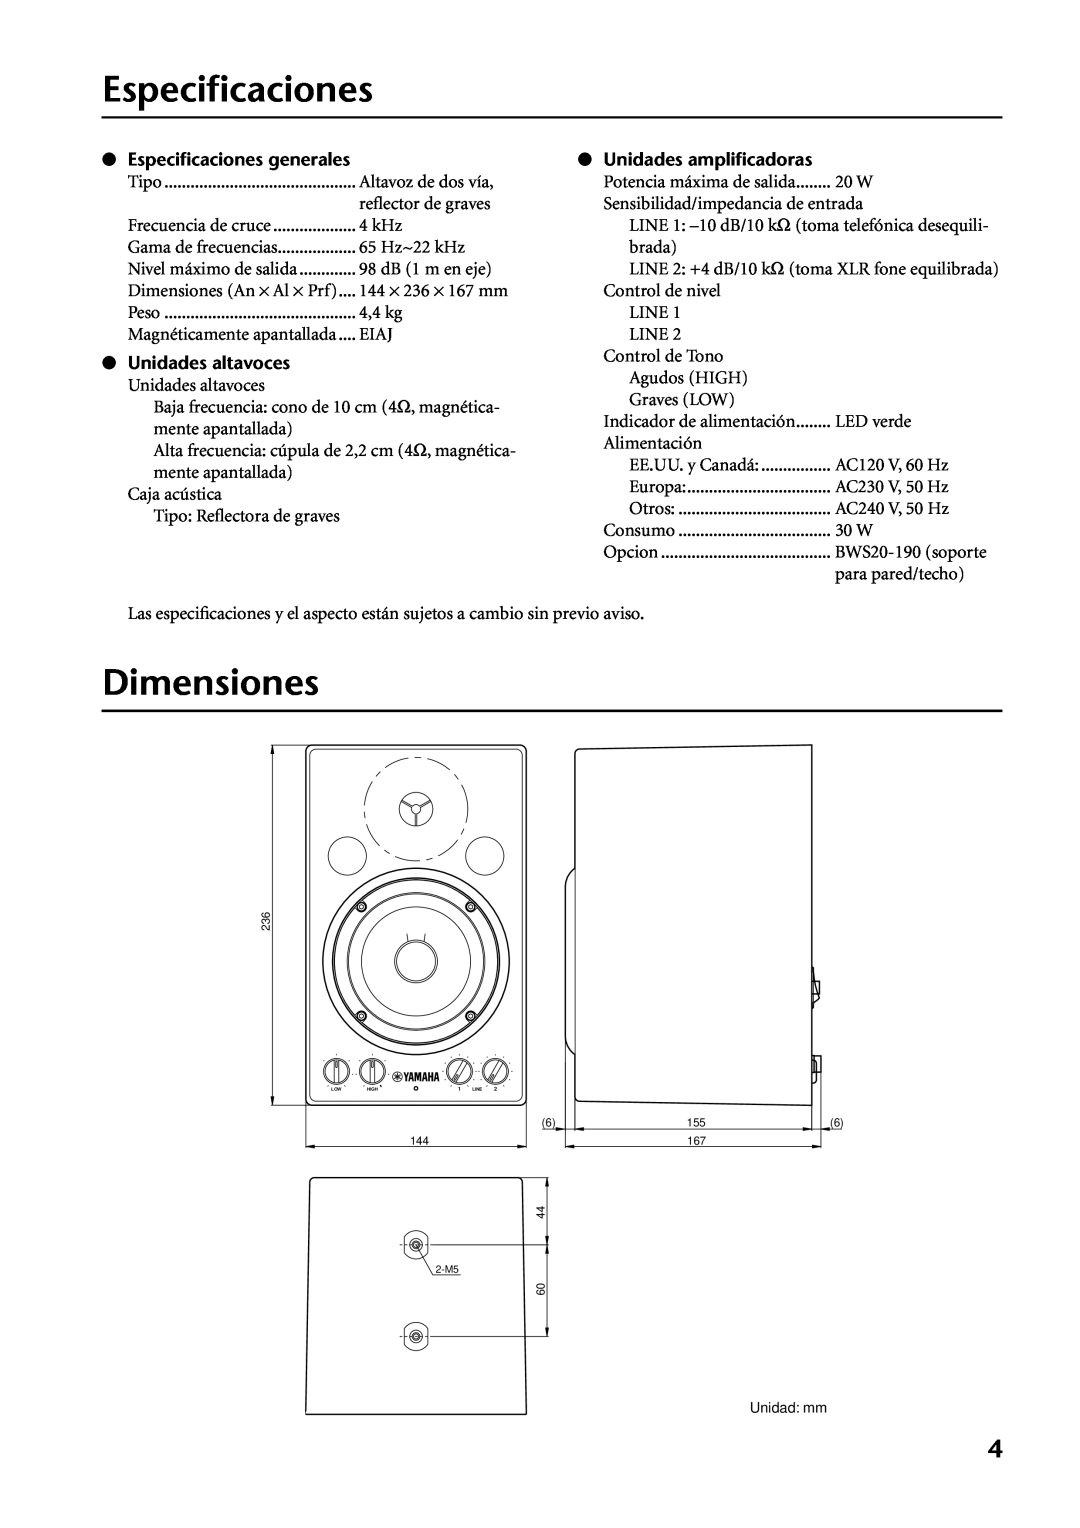 Yamaha MSP3 owner manual Dimensiones, Especiﬁcaciones generales, Unidades altavoces, Unidades ampliﬁcadoras 